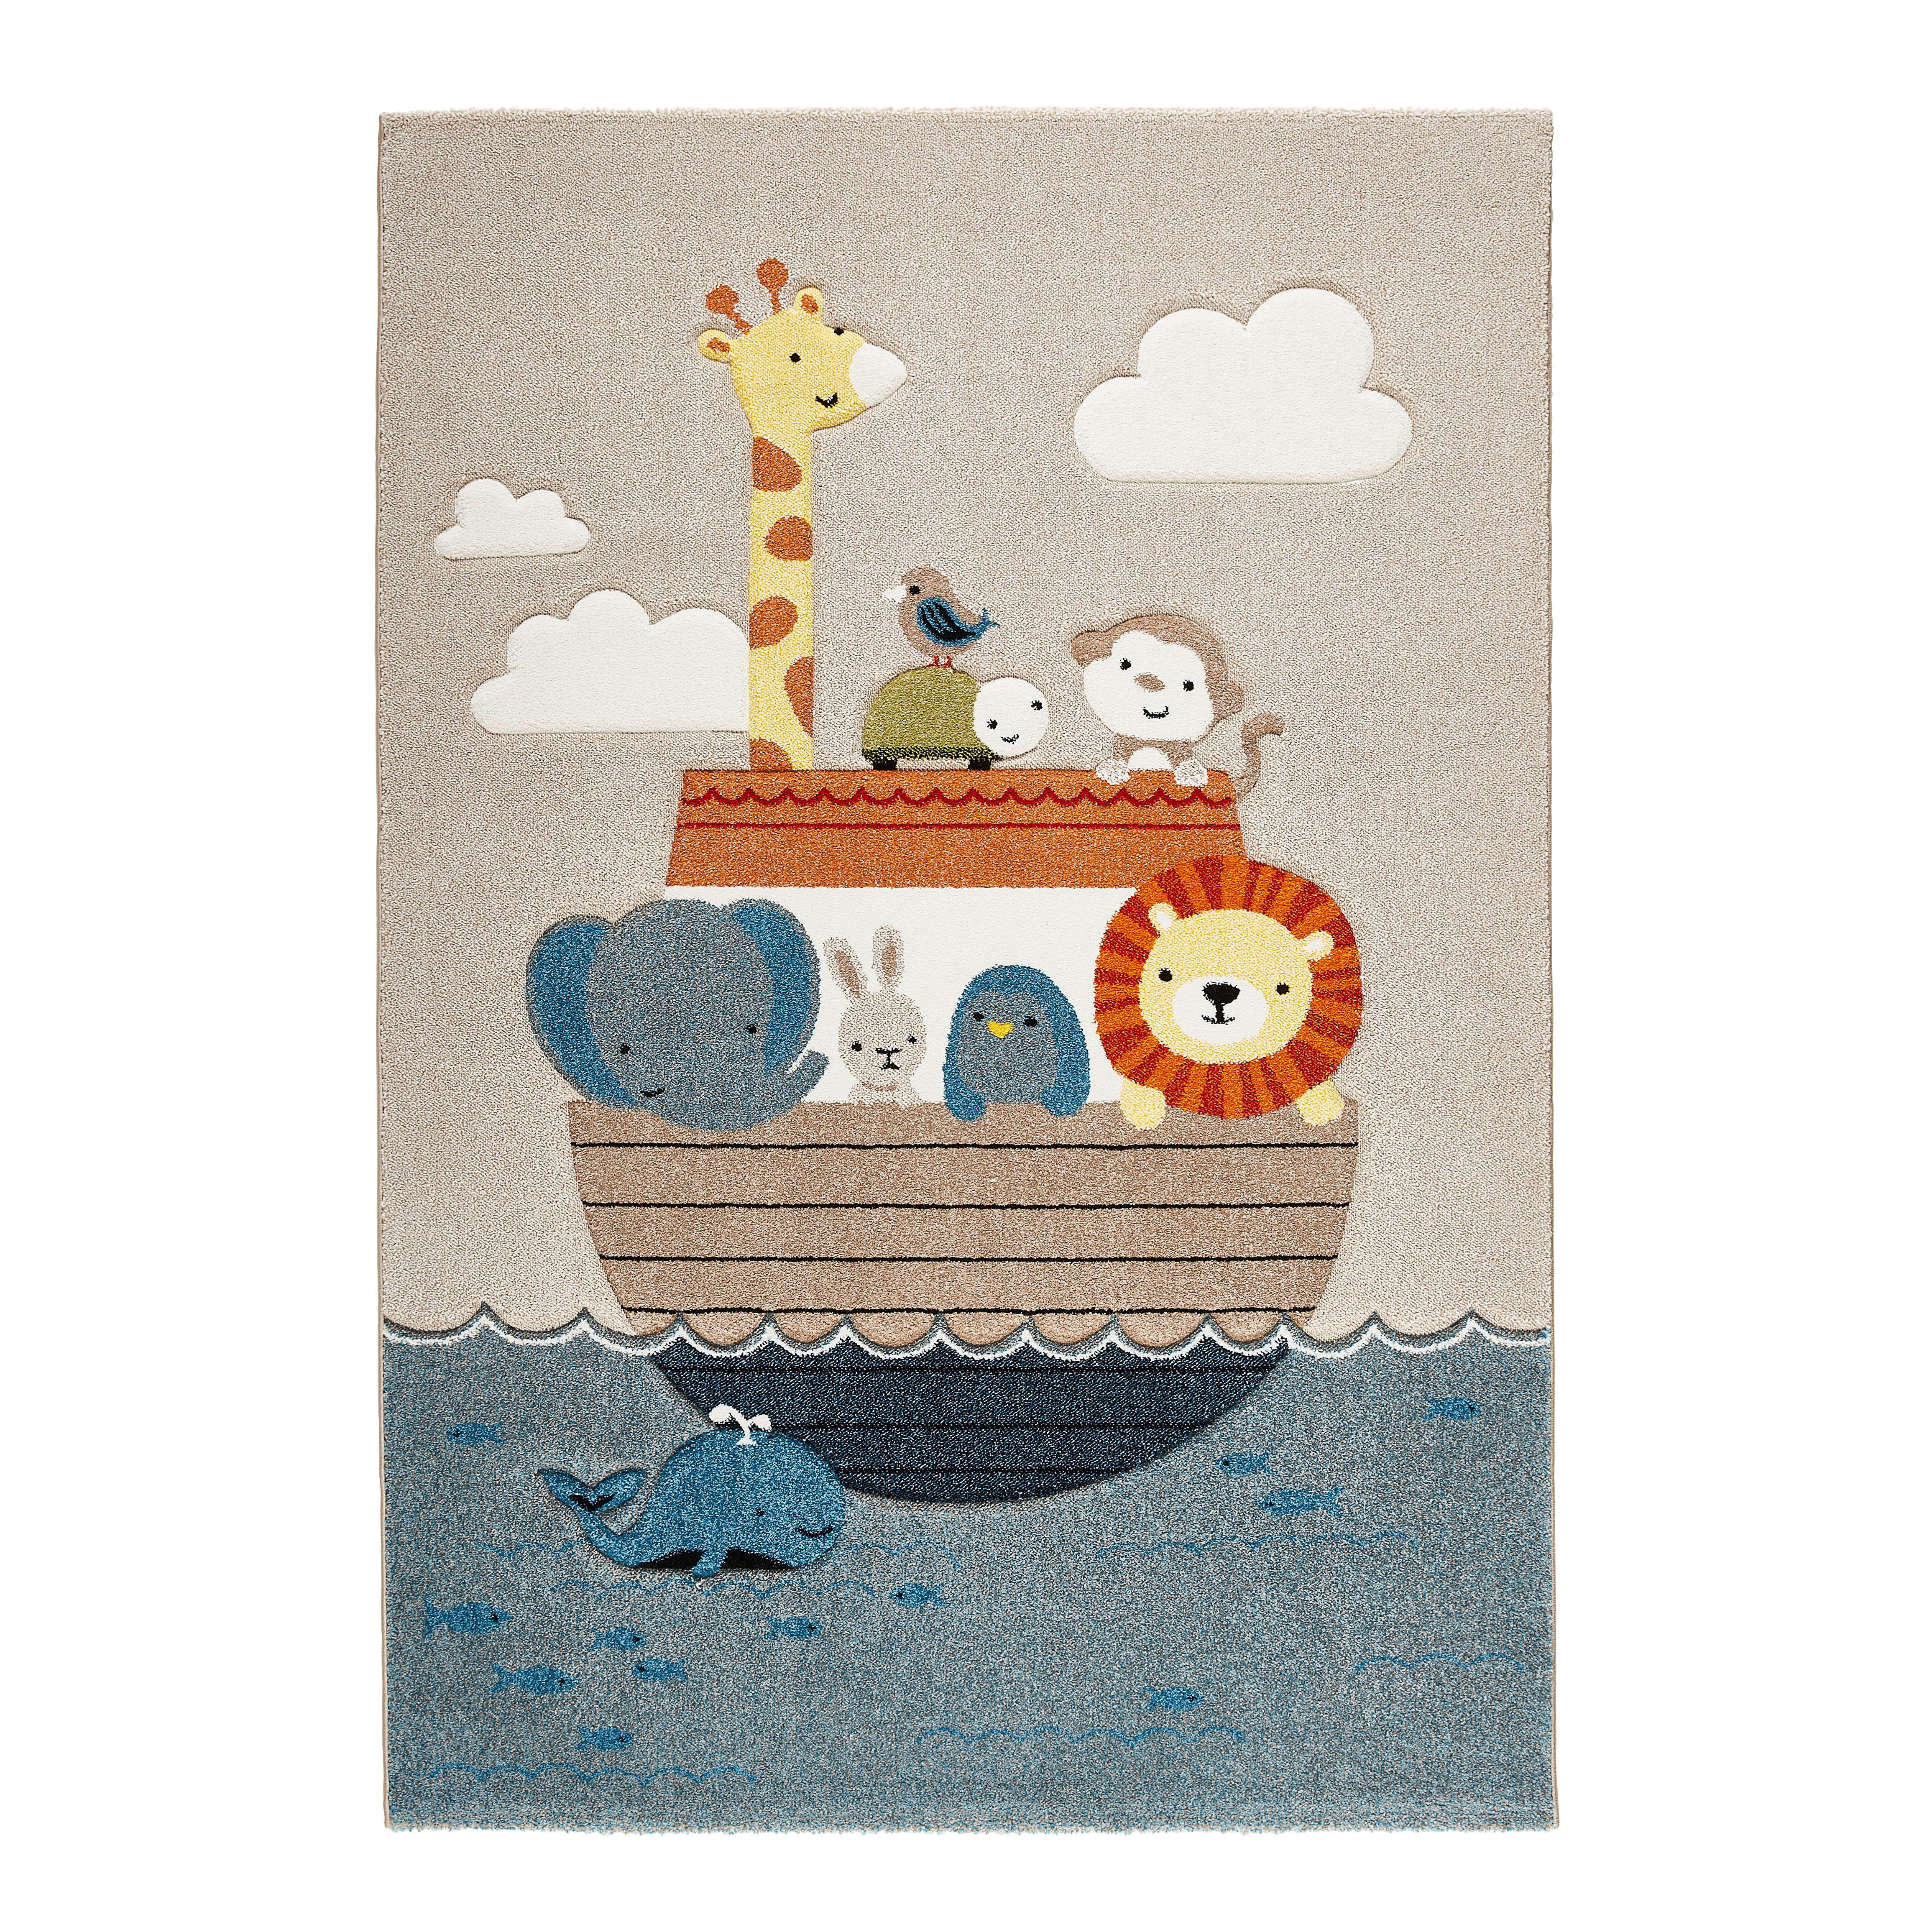 KINDERTEPPICH 80/150 cm Arche Noah  - Multicolor, Trend, Textil (80/150cm) - Ben'n'jen